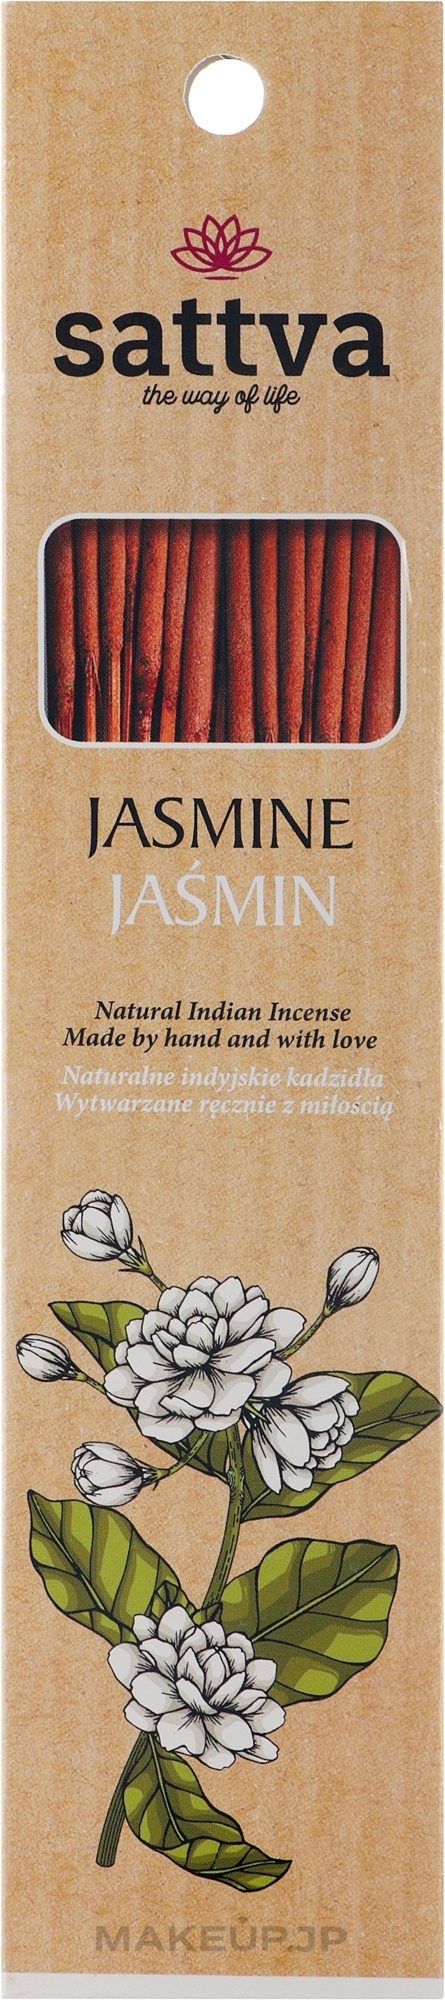 Jasmine Incense Sticks - Sattva Jasmine — photo 15 szt.